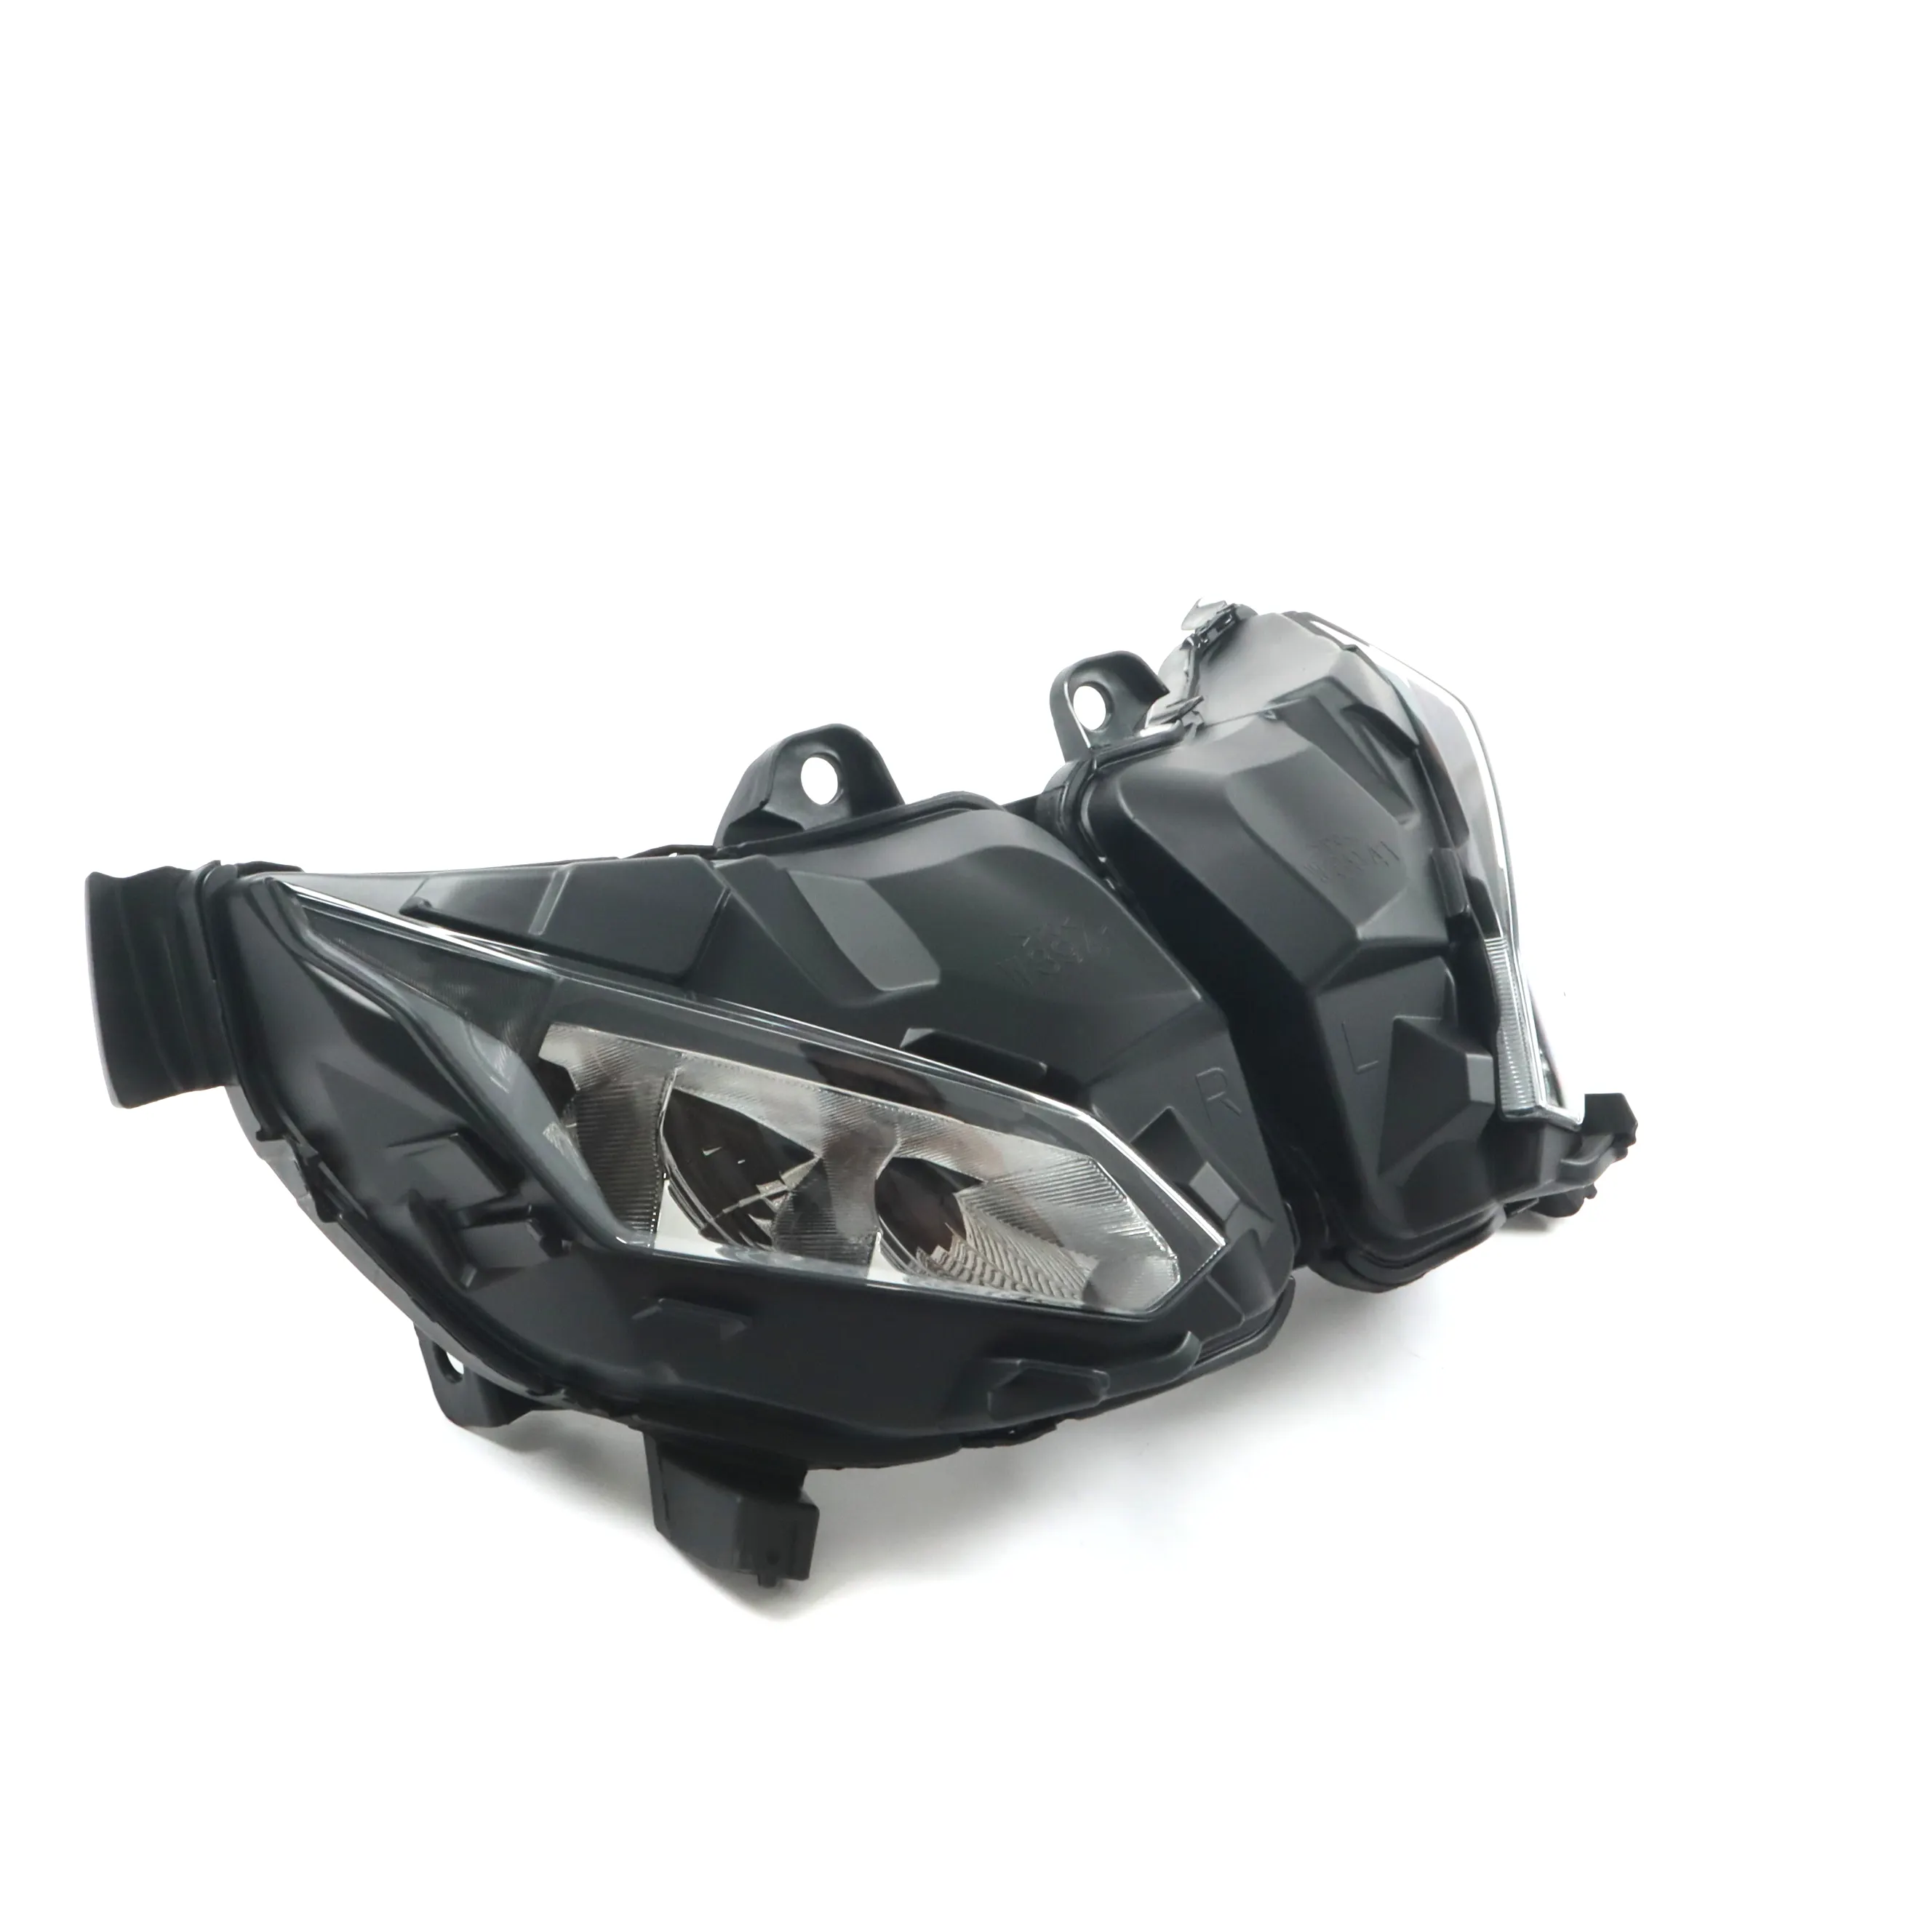 Белый свет мотоцикла продукты для HONDA X-ADV светодиодный передний свет лампы запчасти XADV фар